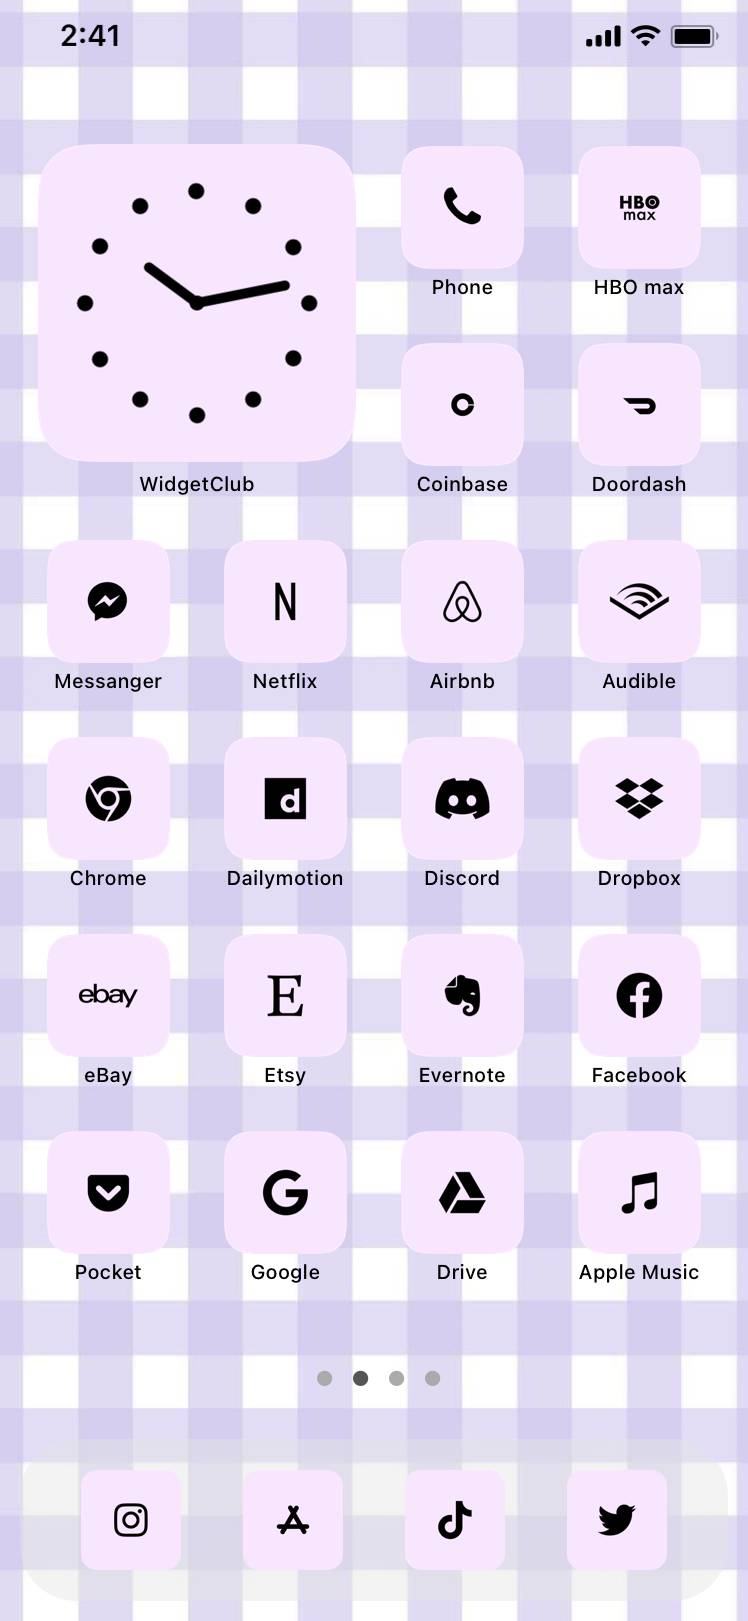 purple vibesƏsas ekran ideyaları[3tkqsQWiwckt2BMXcr9E]